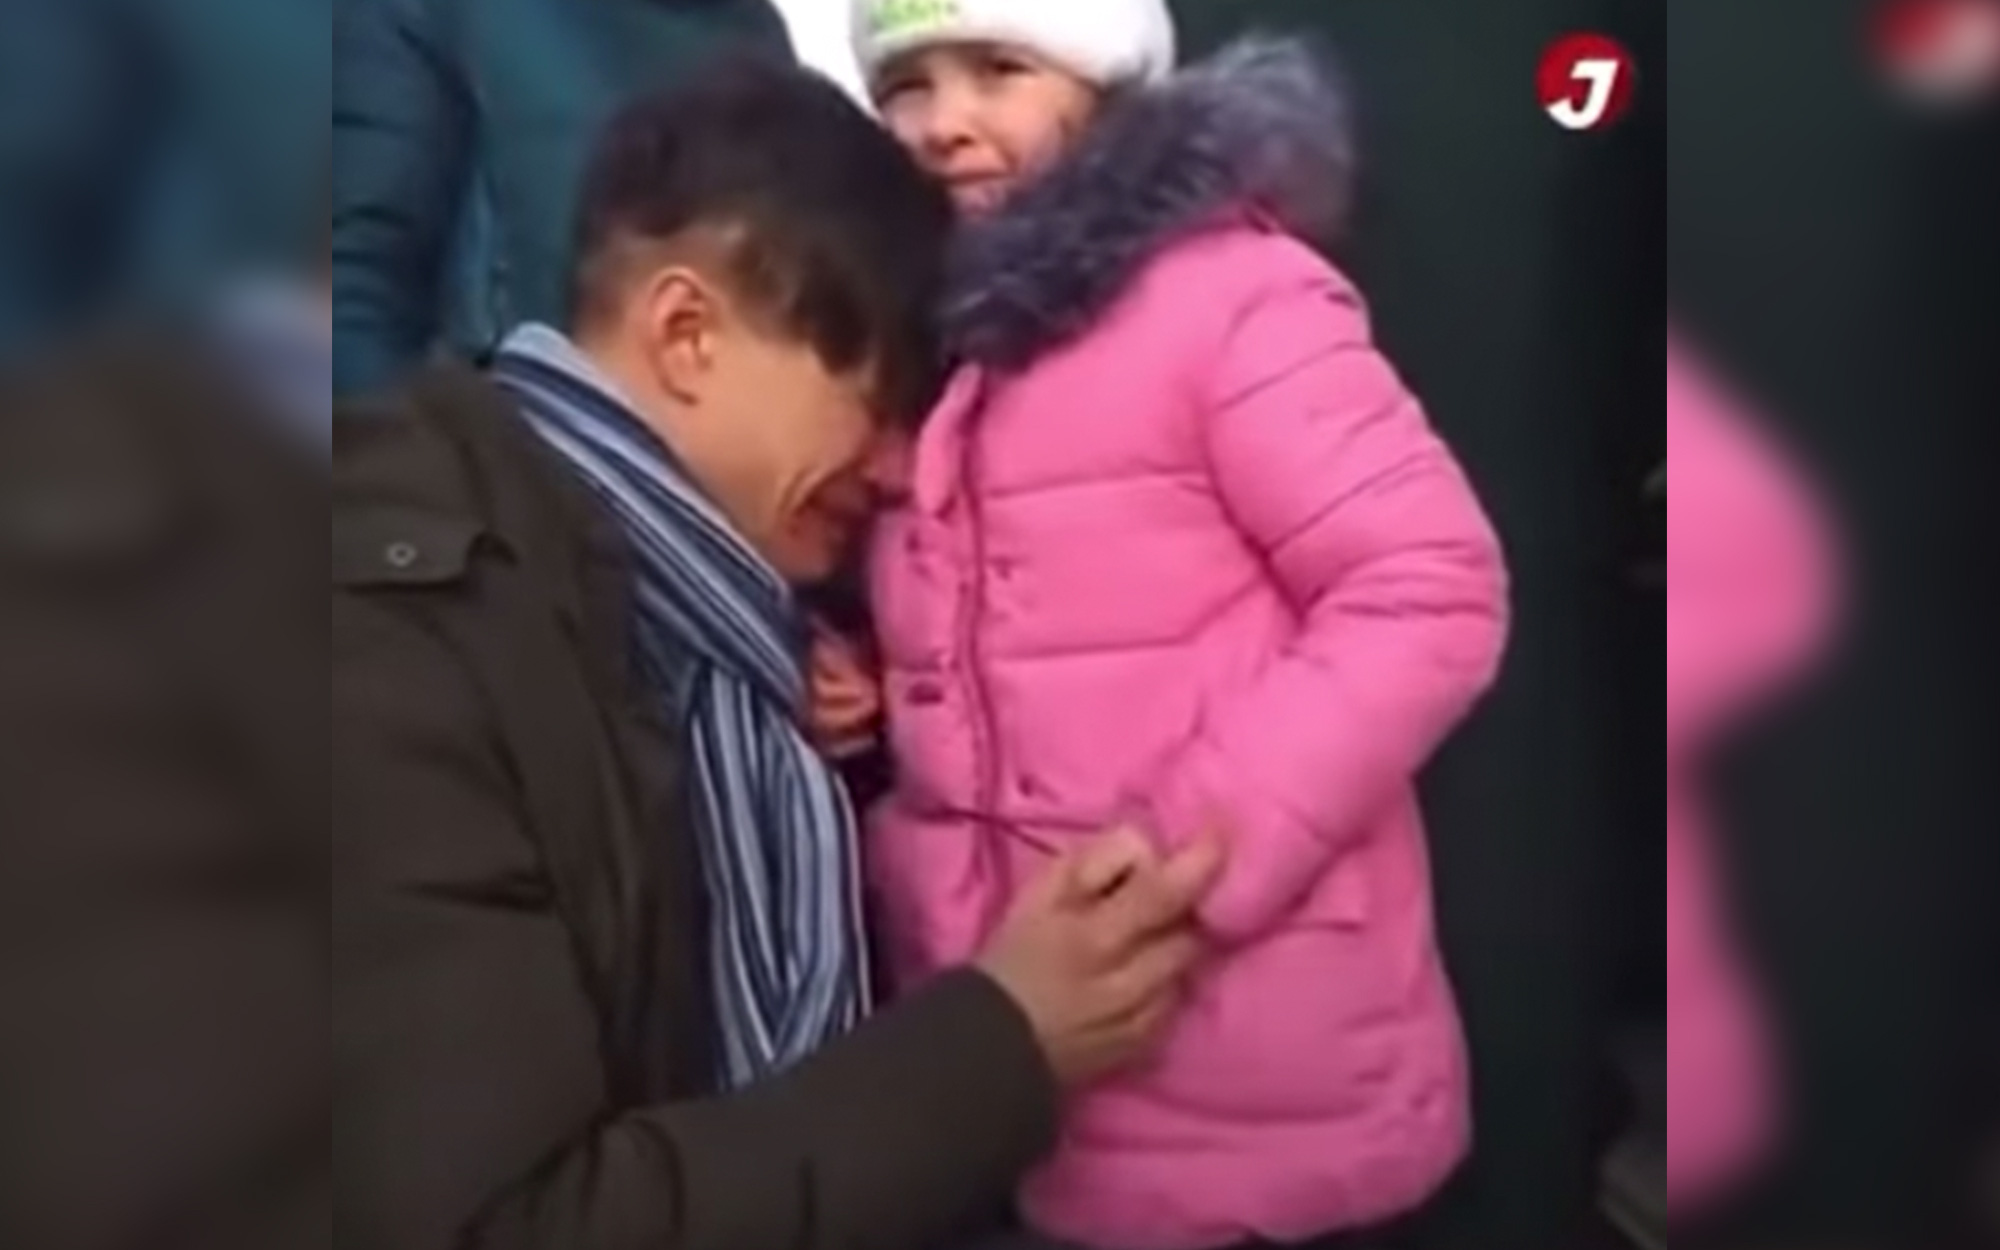 Chiến sự Ukraine: Video ông bố bật khóc tiễn con gái nhỏ đi sơ tán khiến nhiều người xúc động